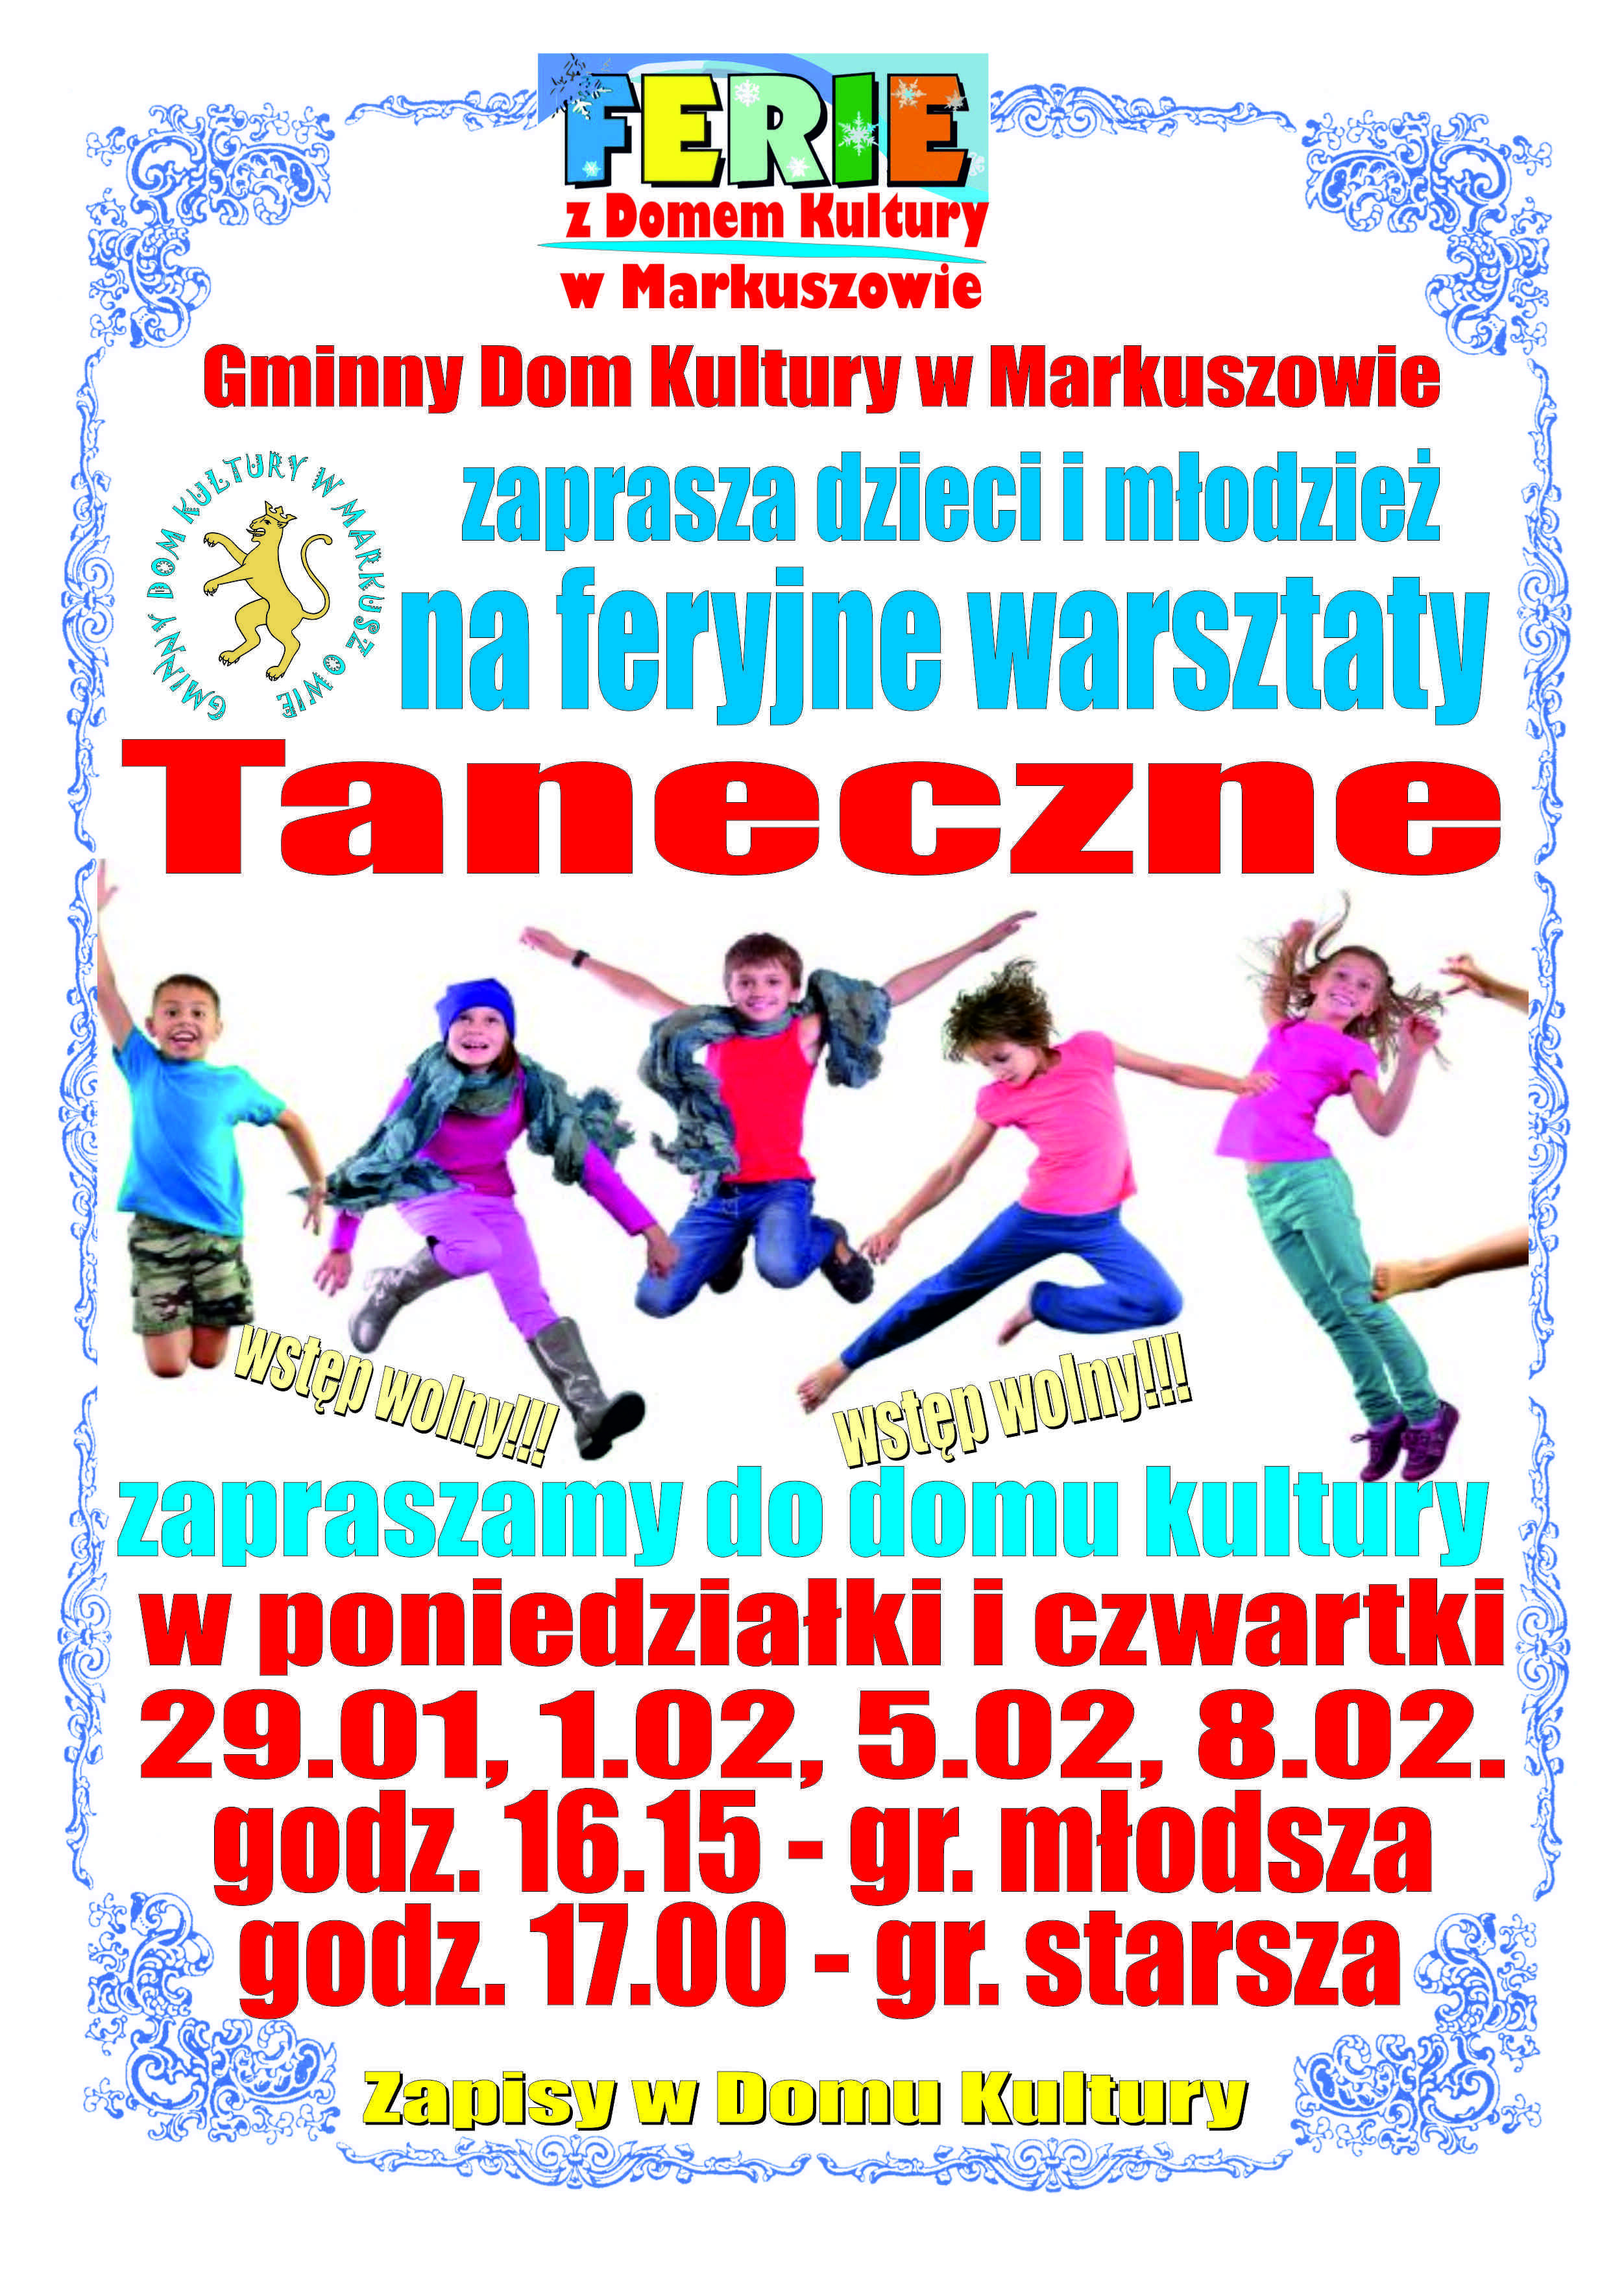 Zdjęcie przedstawia kolorową plakat  informacyjny o wydarzeniu "Ferie z tańcem" z grafiką dzieci tańczących radośnie w powietrzu na białym tle. Obramowane jest dekoracyjnym, niebieskimi wzorami.